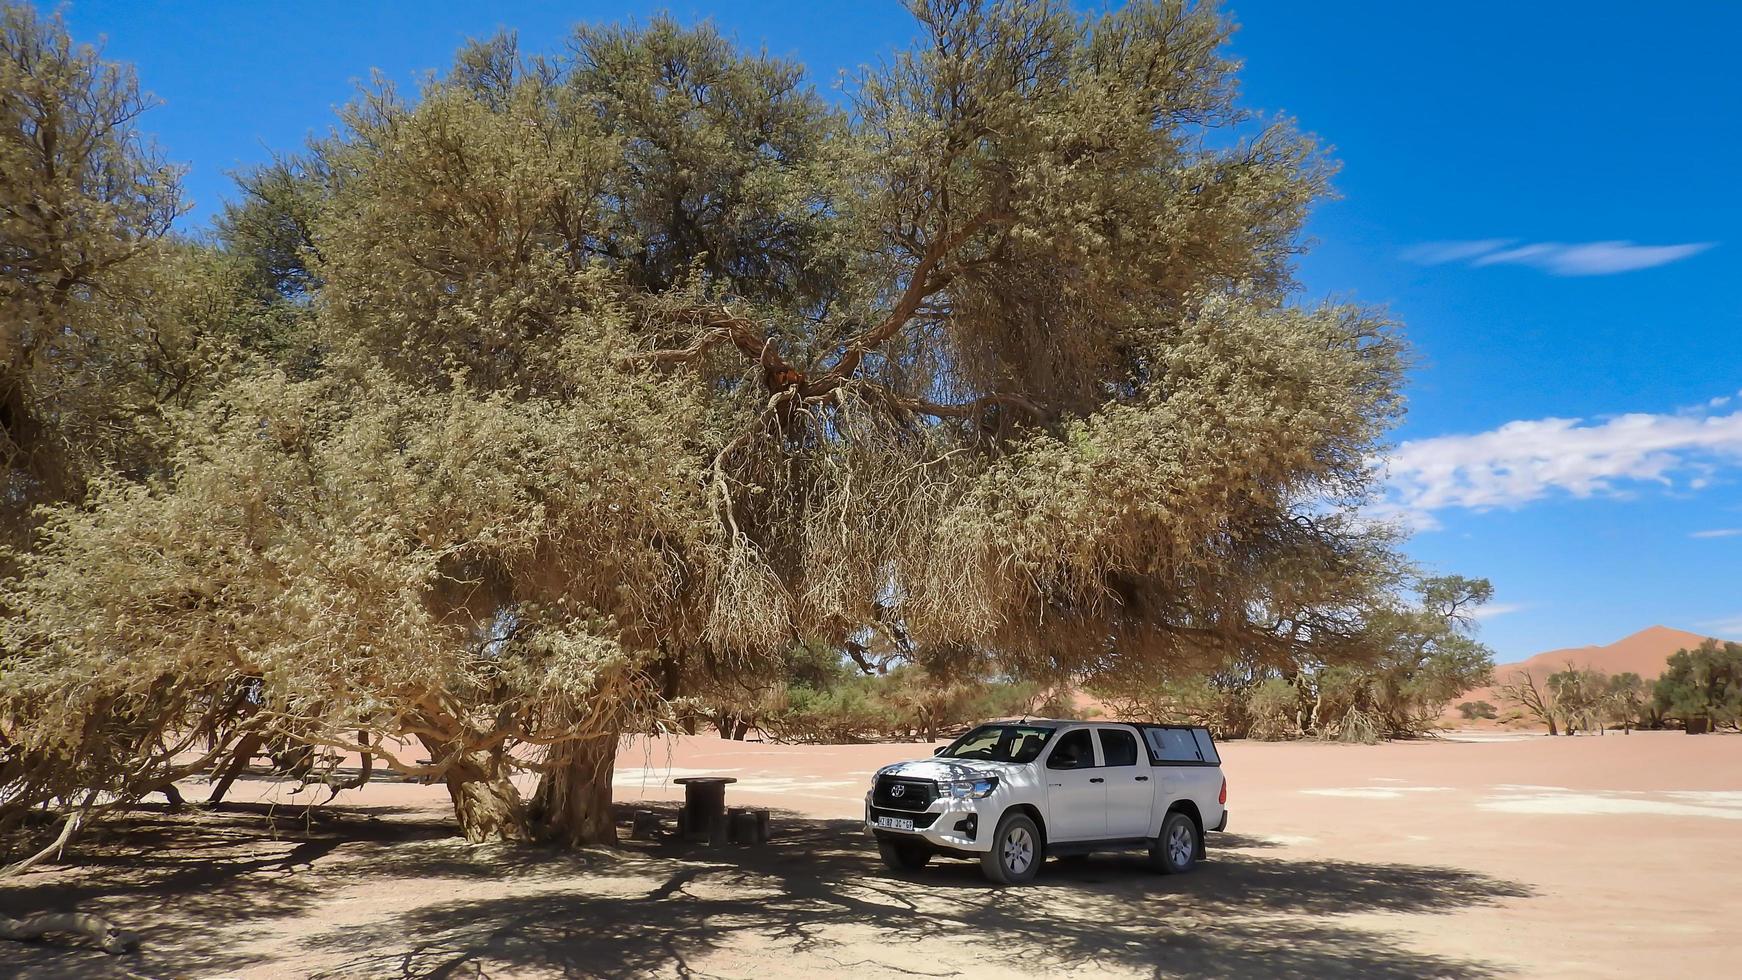 zossusvlei, Namibië, 2021 van de weg af voertuig geparkeerd in de schaduw van een kameel doorn boom foto